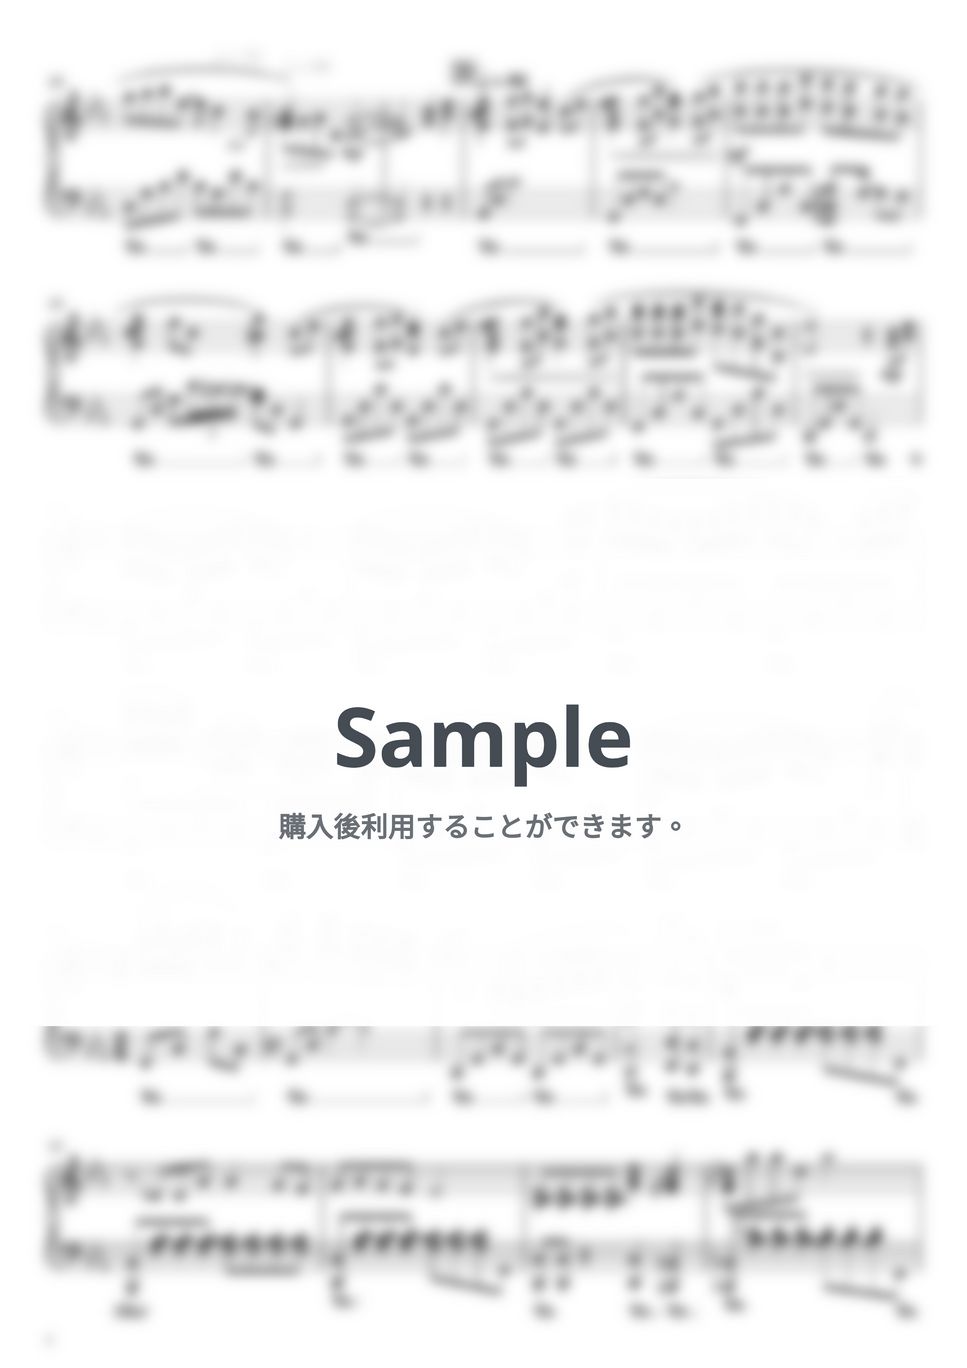 久石譲 - 風のとおり道 (youtubeにアップした楽譜と簡単楽譜、両方あります。) by ブルブルモンク